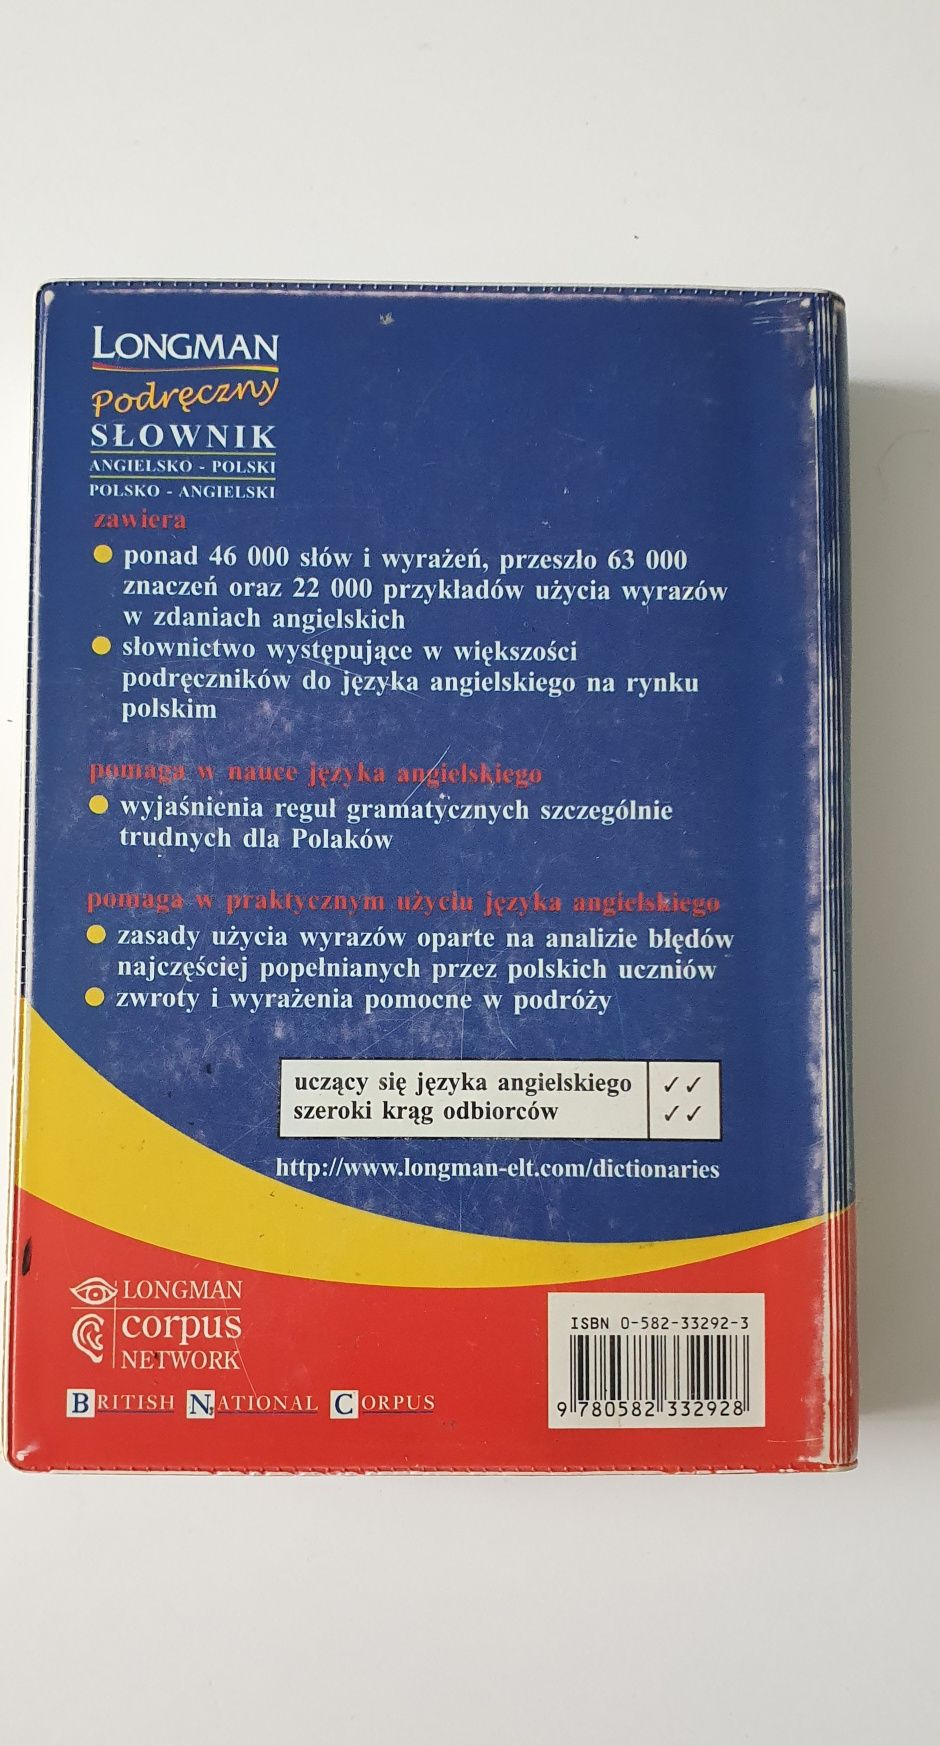 Longman Podręczny słownik angielsko - polski / polsko - angielski